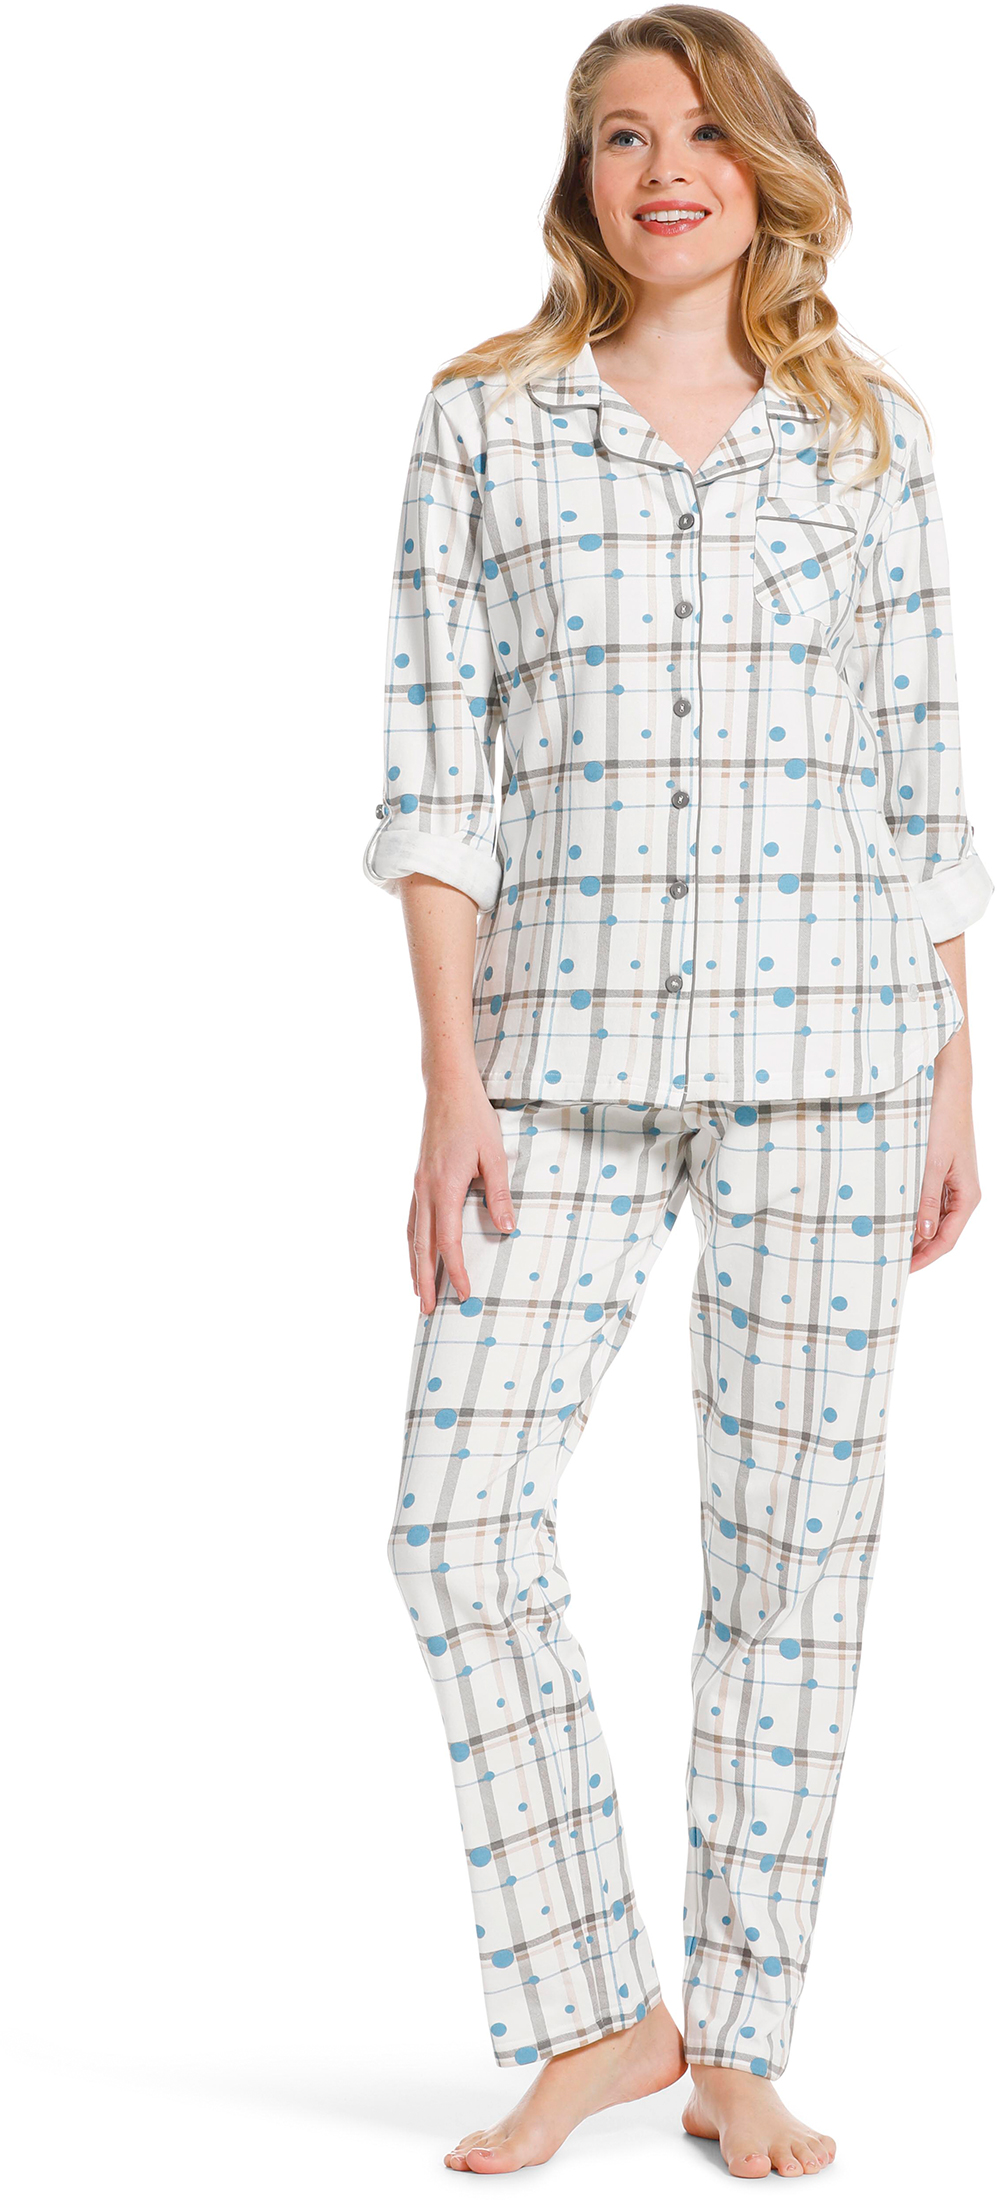 Pastunette dames doorknoop pyjama 20222-142-6-46